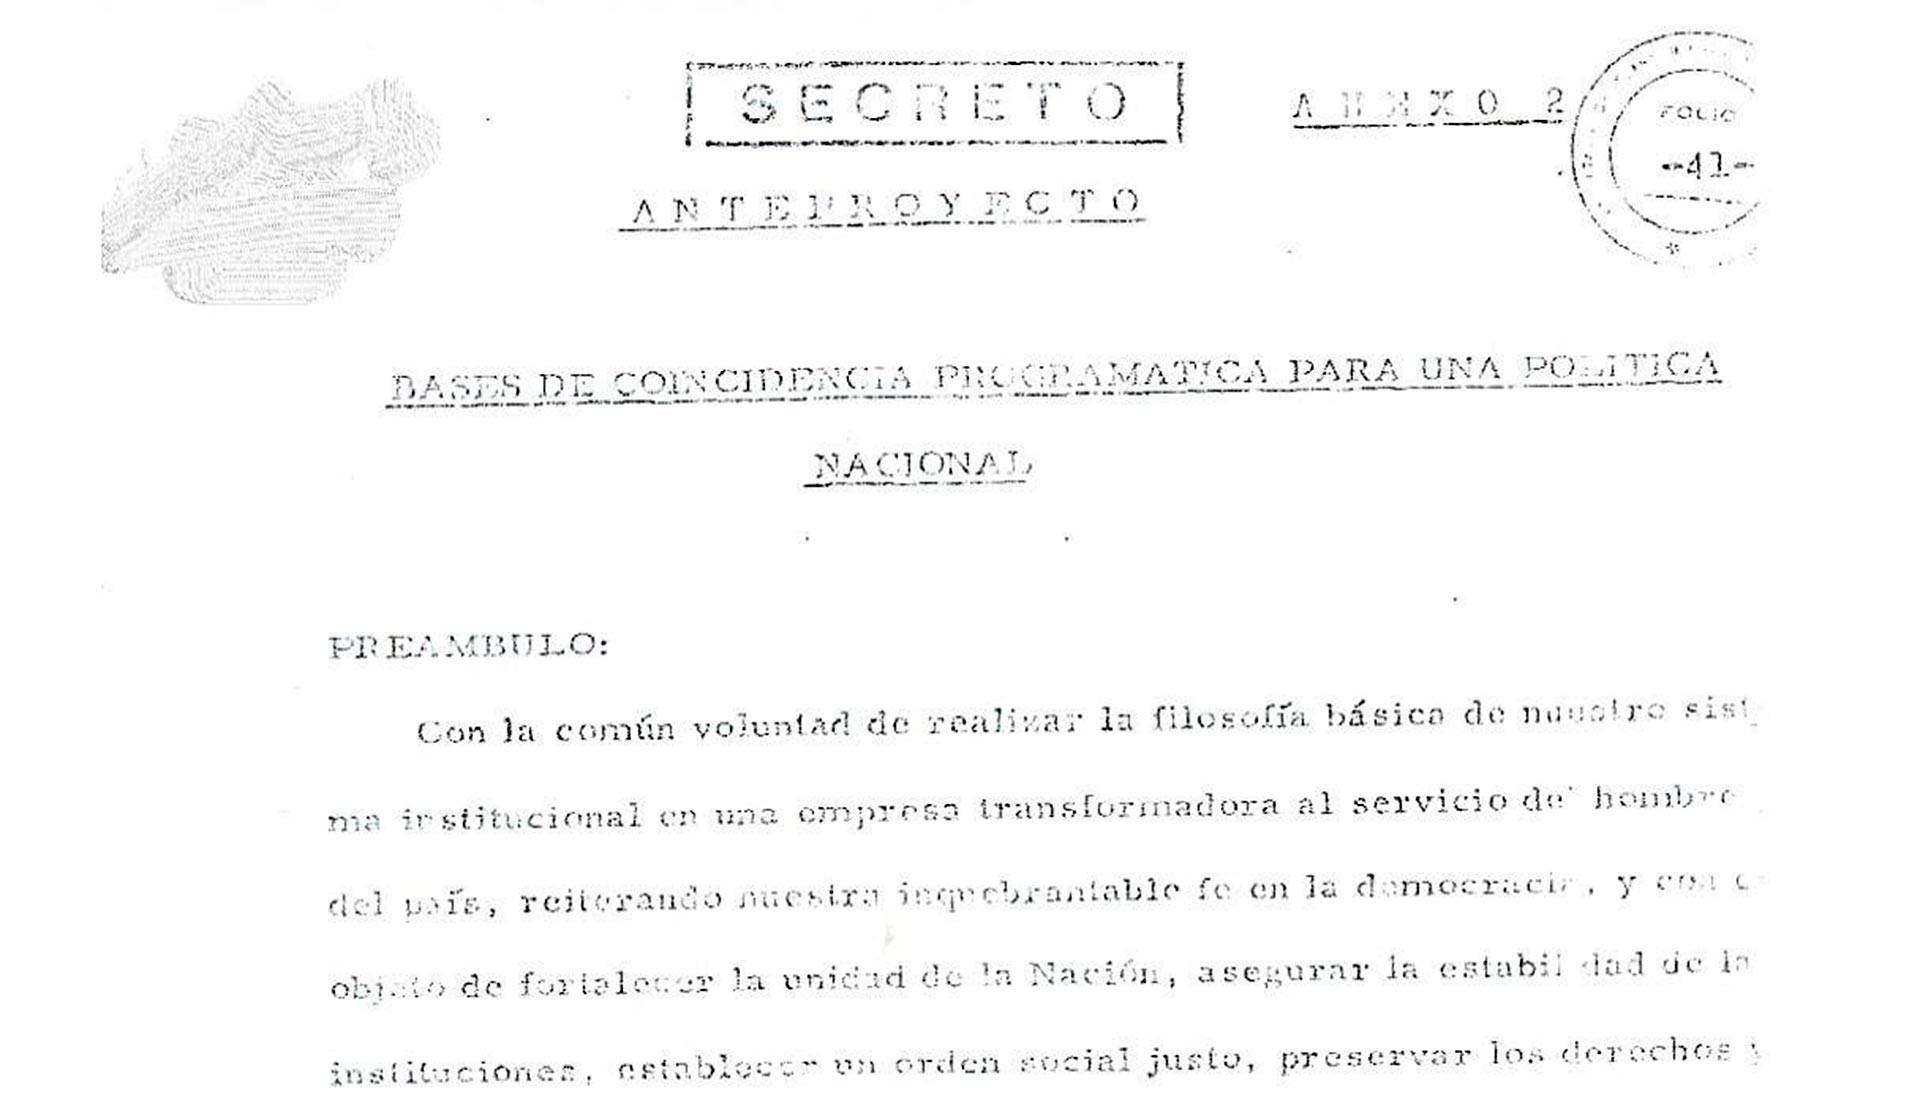 Acta de la Junta Militar de noviembre de 1972 conteniendo las “Bases de coincidencia programática para una política nacional” que debía tratarse con Perón y otras fuerzas políticas


